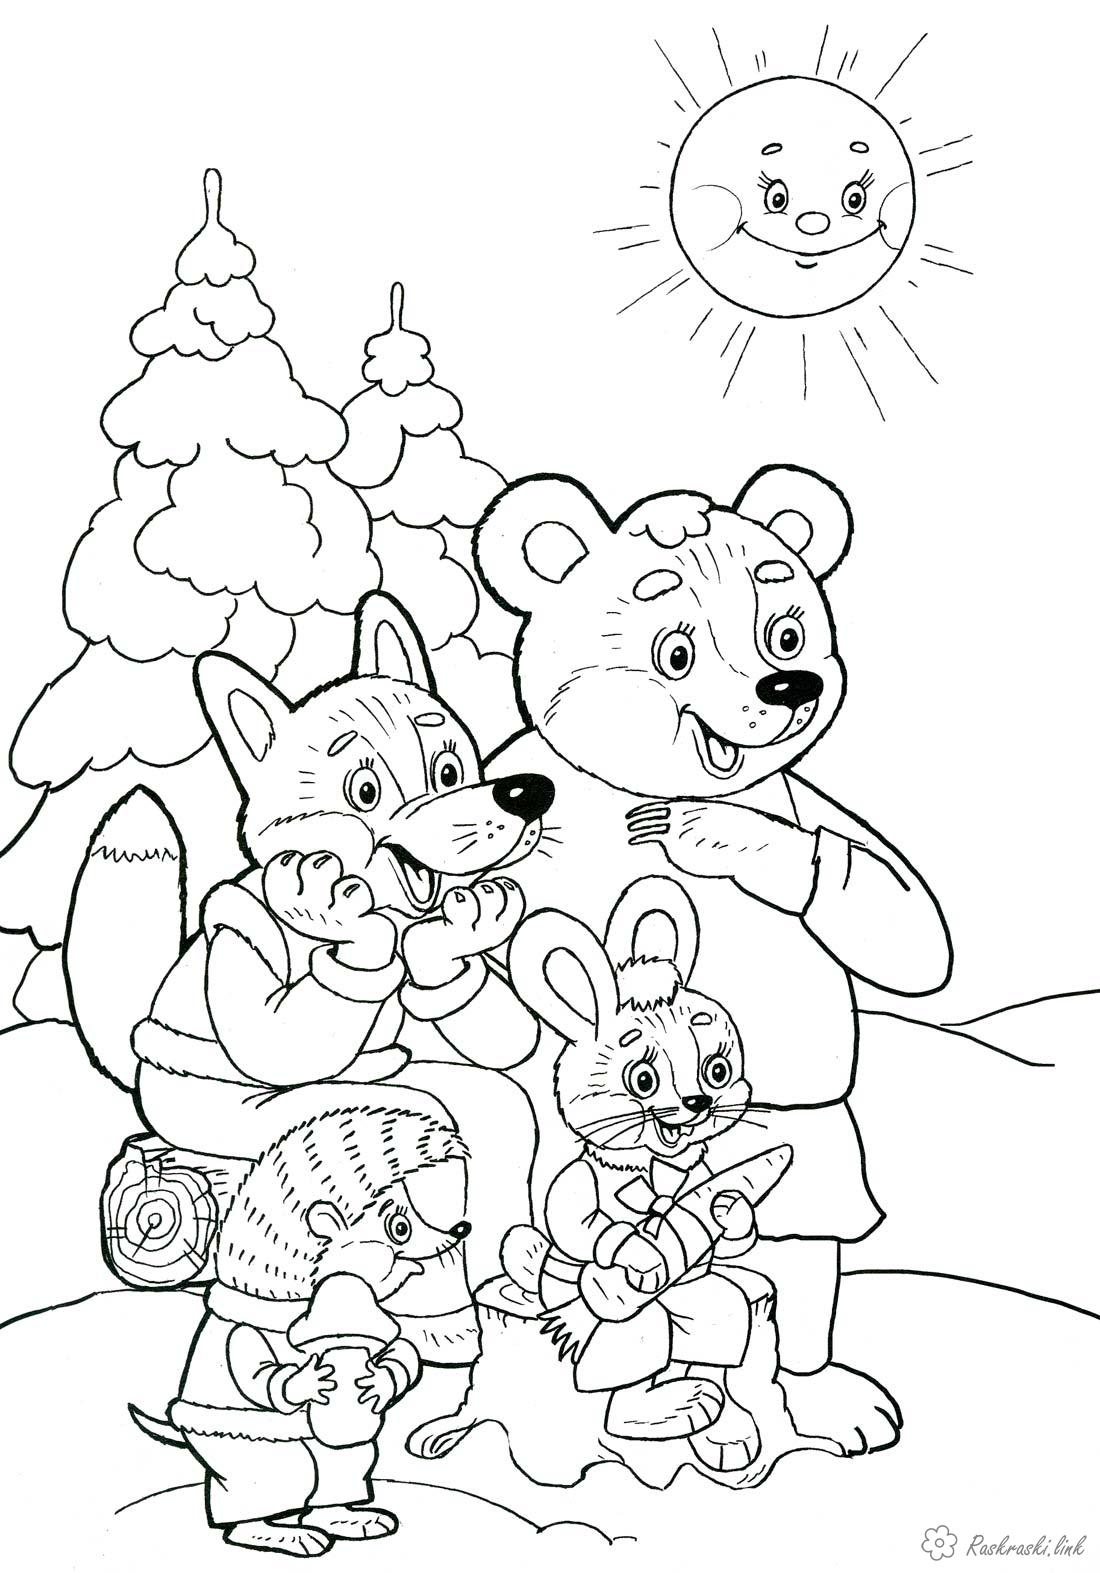 Розмальовки новорічна Дитяча новорічна розфарбування, ялинки, ведмідь, лисиця, заєць, їжачок і яскраве сонечко